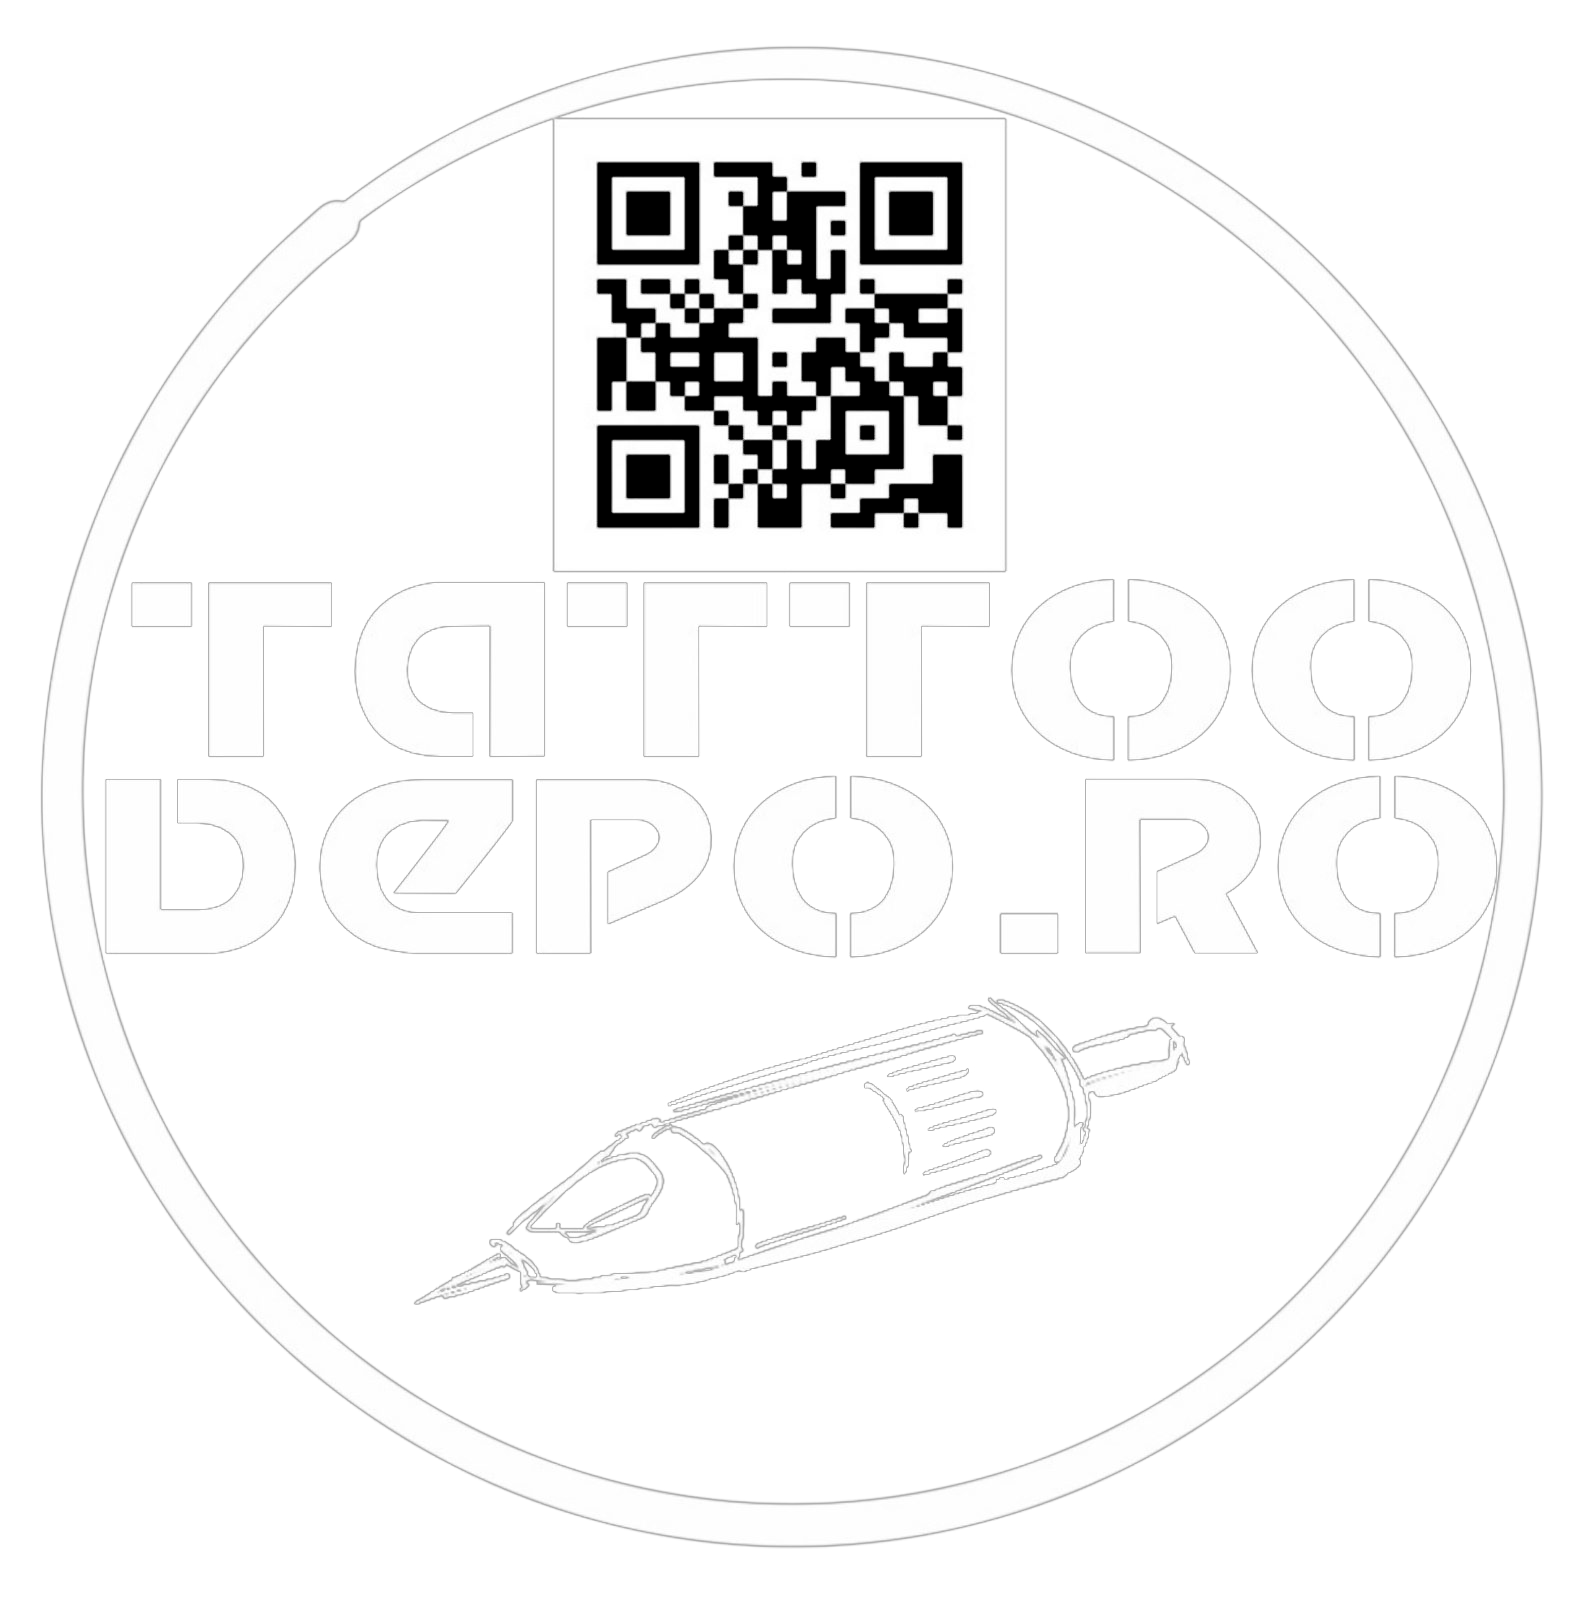 Eclipse Tattoo Ink Total Eclipse,Tus negru intens tatuaje,Cerneală tatuaj 260ml,Tus conform REACH,Negru profund tatuaj,Ink profesional tatuaje,Tus durabil tatuaj,Cerneală de calitate tatuaj,Tus negru Eclipse 260ml,Reglementări REACH tatuaj,Tus negru vibrant,Accesorii tatuaj profesionale,Ink negru intensiv,Cerneală tatuaj premium,Total Eclipse ink 260ml,eclipse-tattoo-ink-total-eclipse-260ml,Eclipse Tattoo Ink Total Eclipse 260ml,Eclipse Tattoo Ink - Total Eclipse 260ml